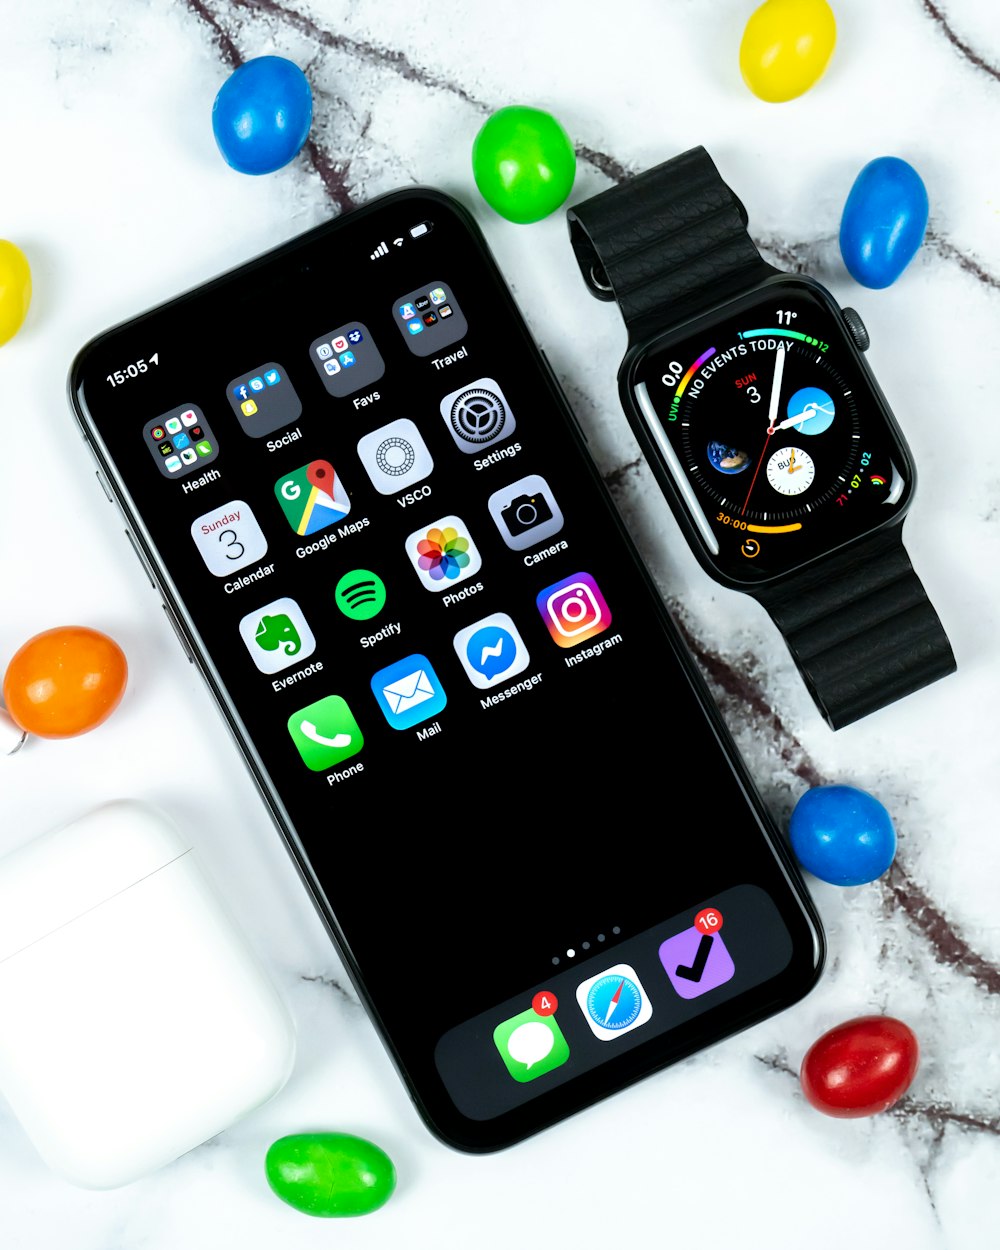 Apple Watch à côté de l’iPhone